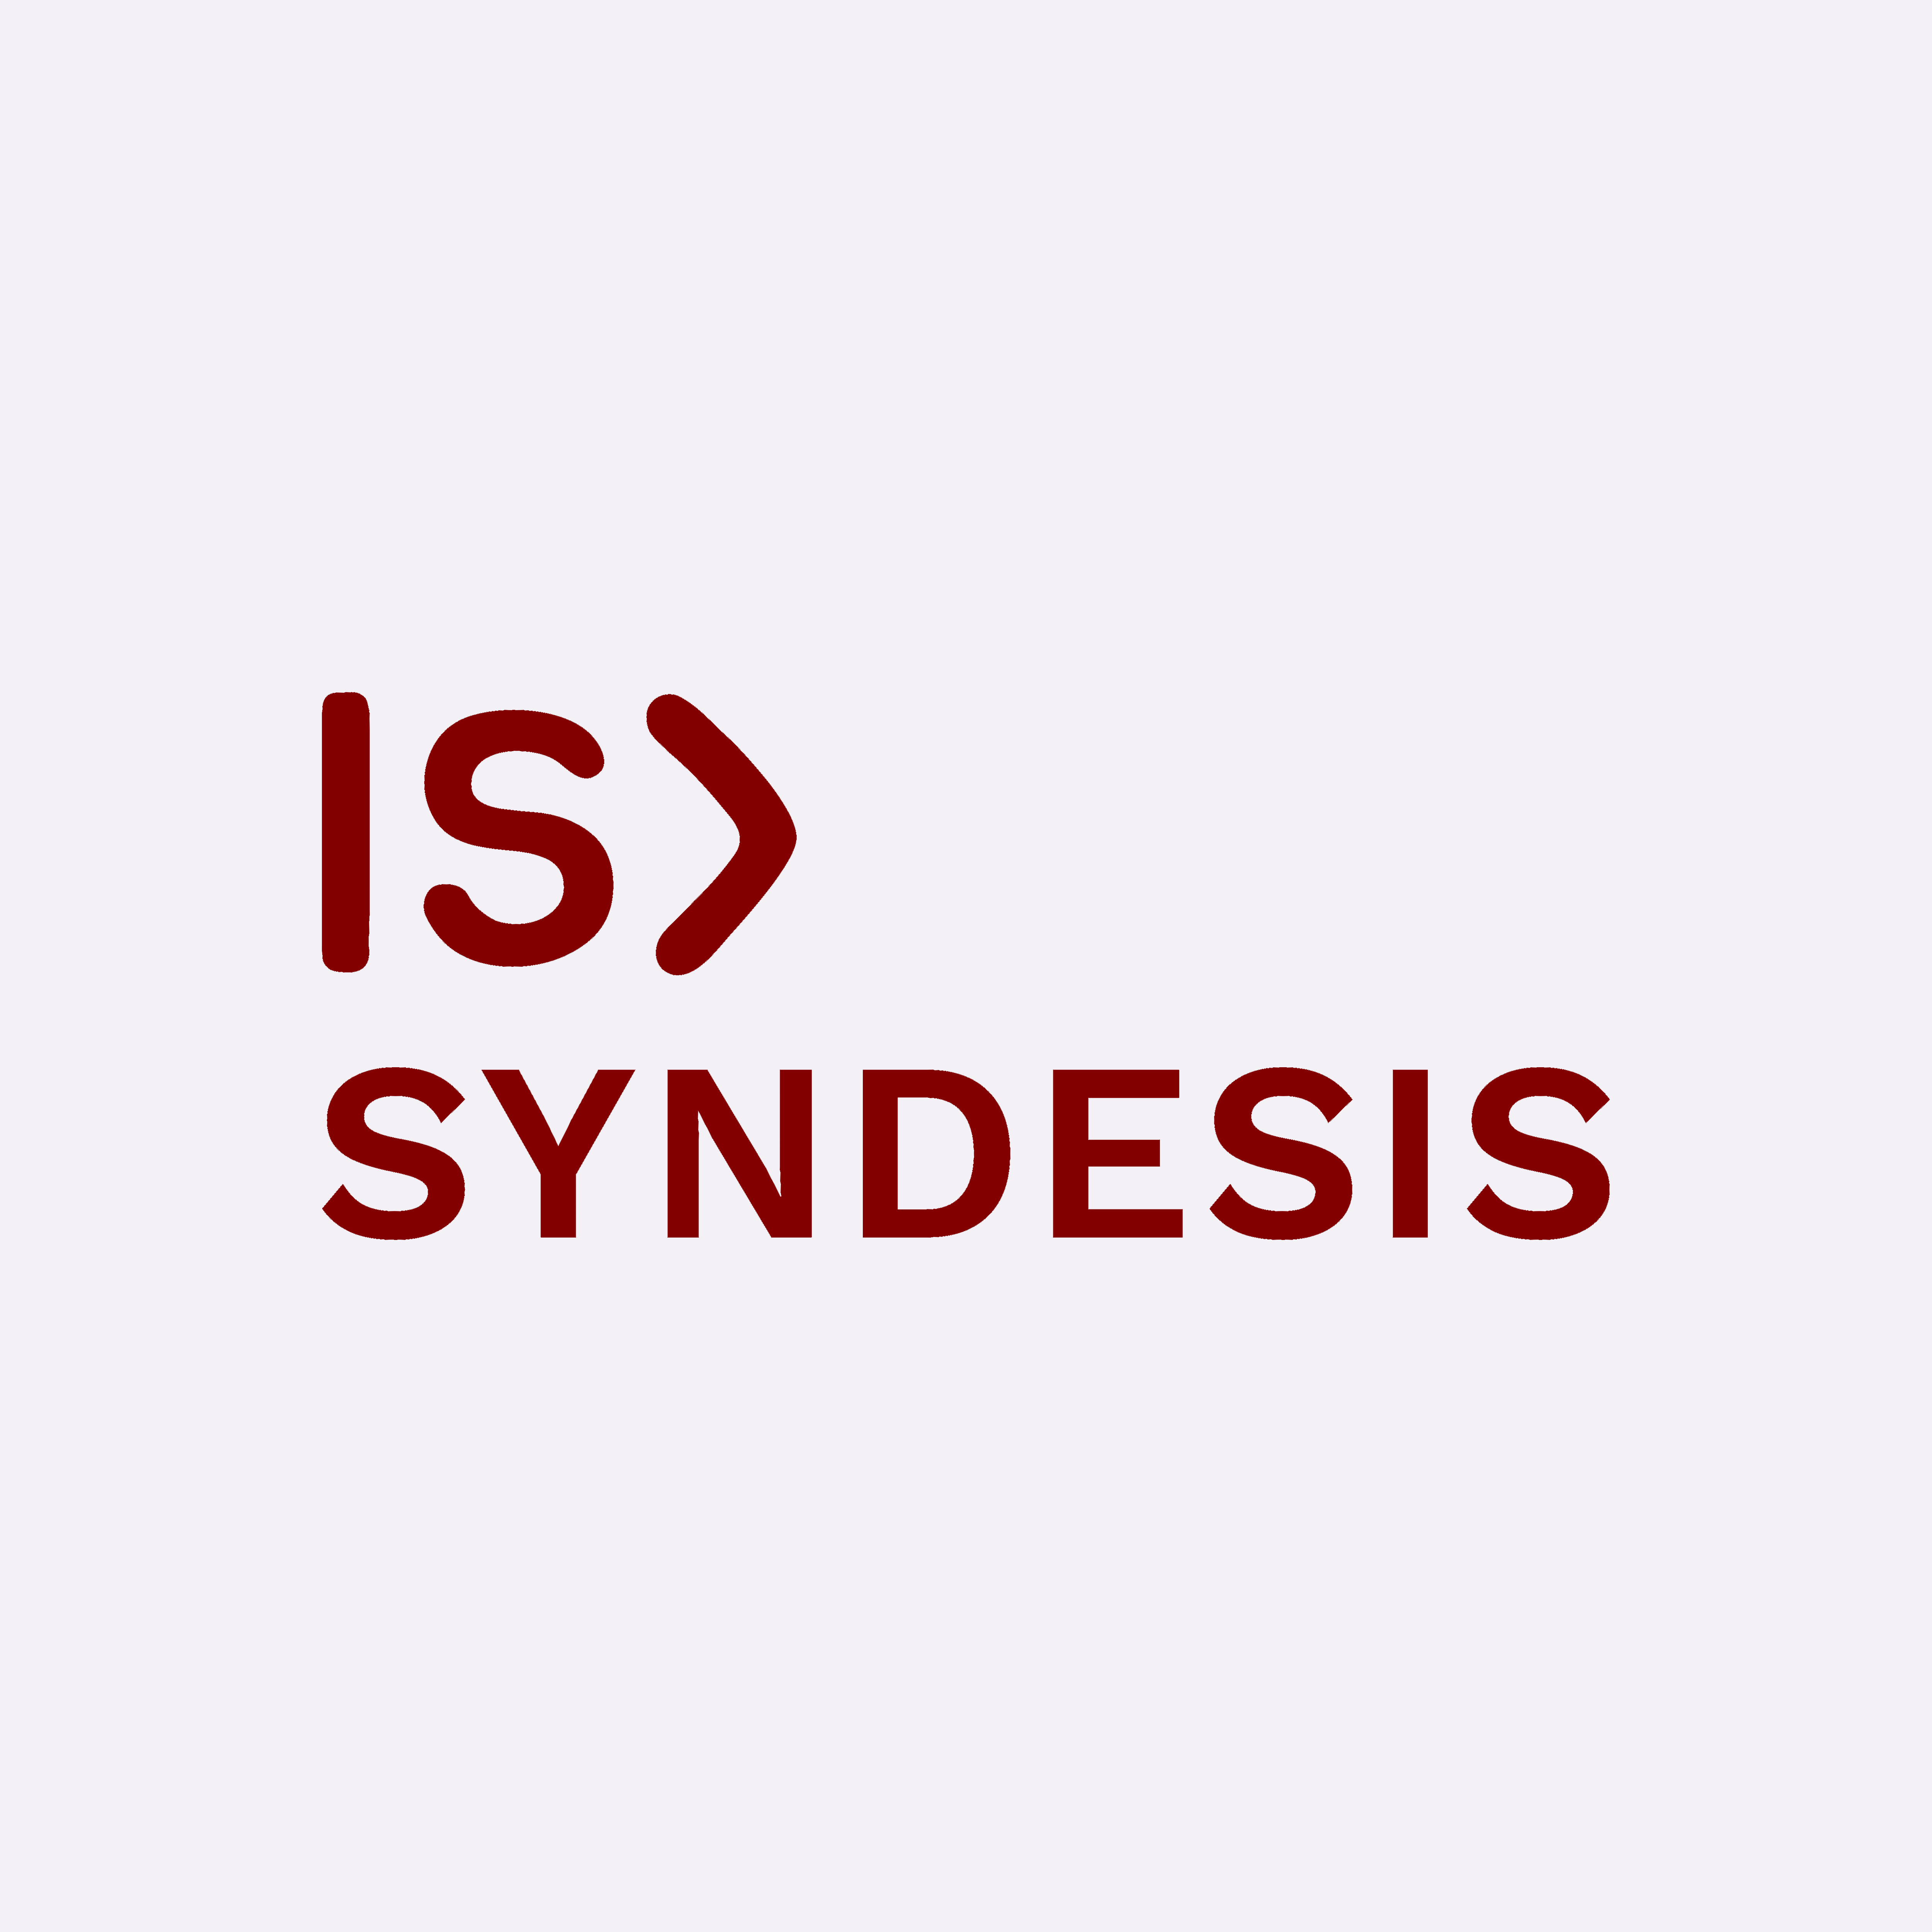 Syndesis Ltd